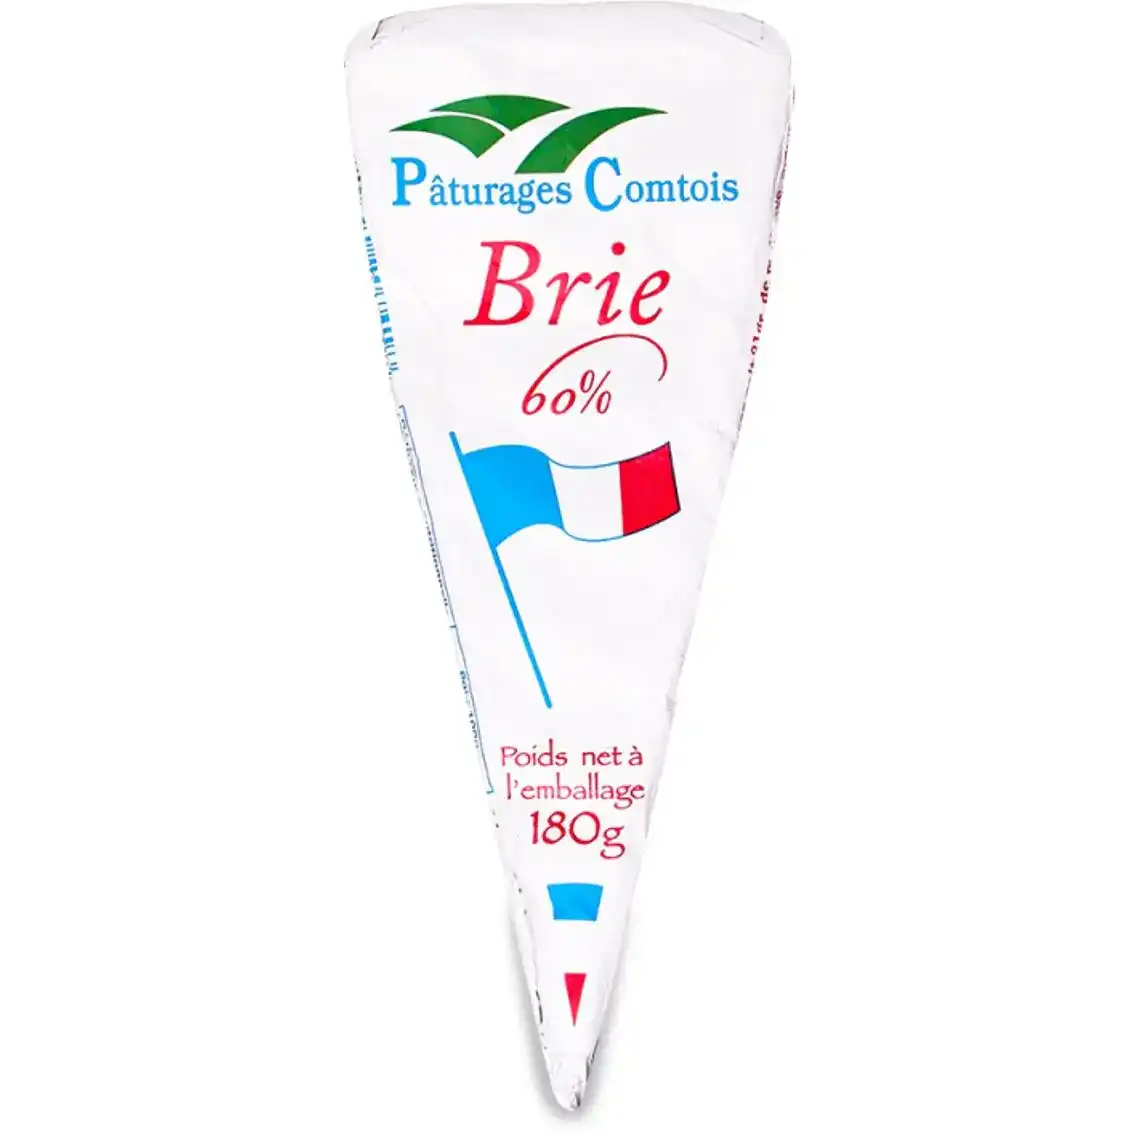 Сир Paturages Comtois Brie 60% 180 г